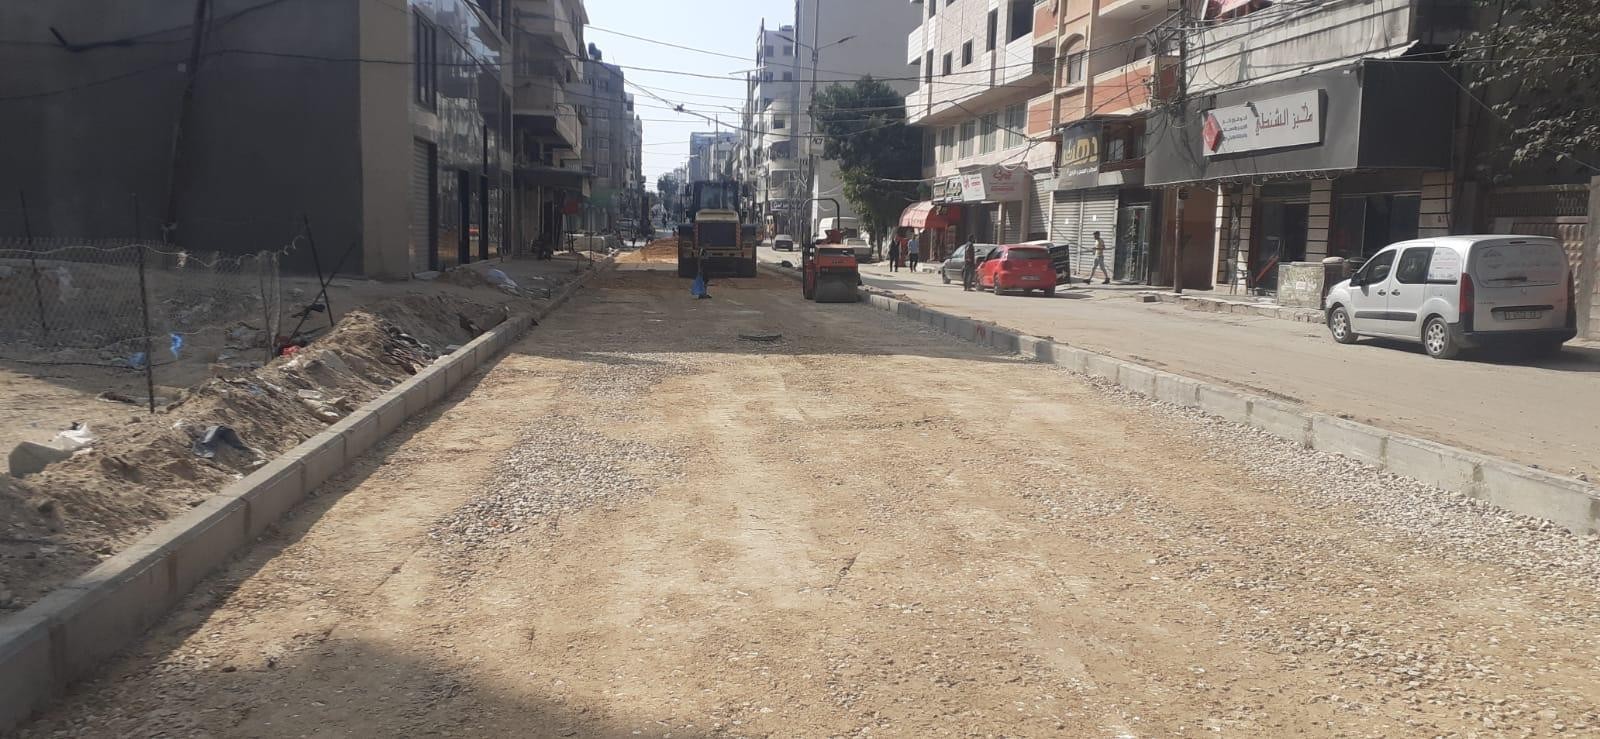 بلدية غزة تبدأ بإجراء صيانة مؤقتة للشوارع الرئيسية المتضررة من العدوان الأخير